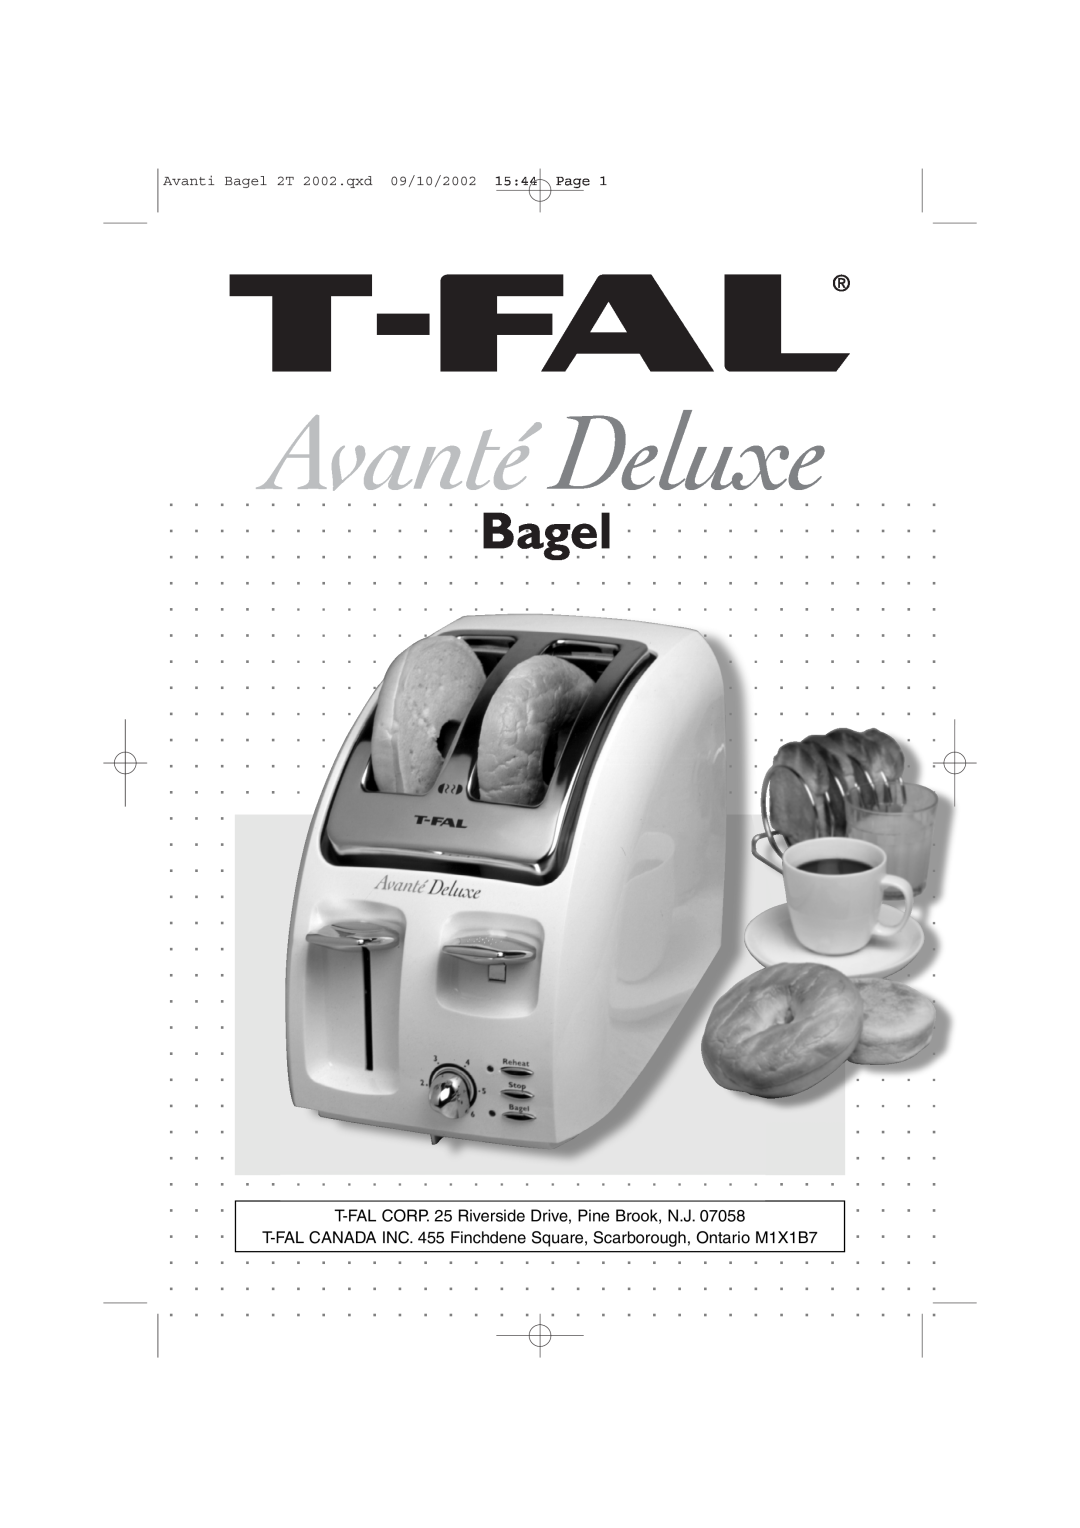 T-Fal Avante Deluxe Bagel manual Avanti Bagel 2T 2002.qxd 09/10/2002 15 44 Page 